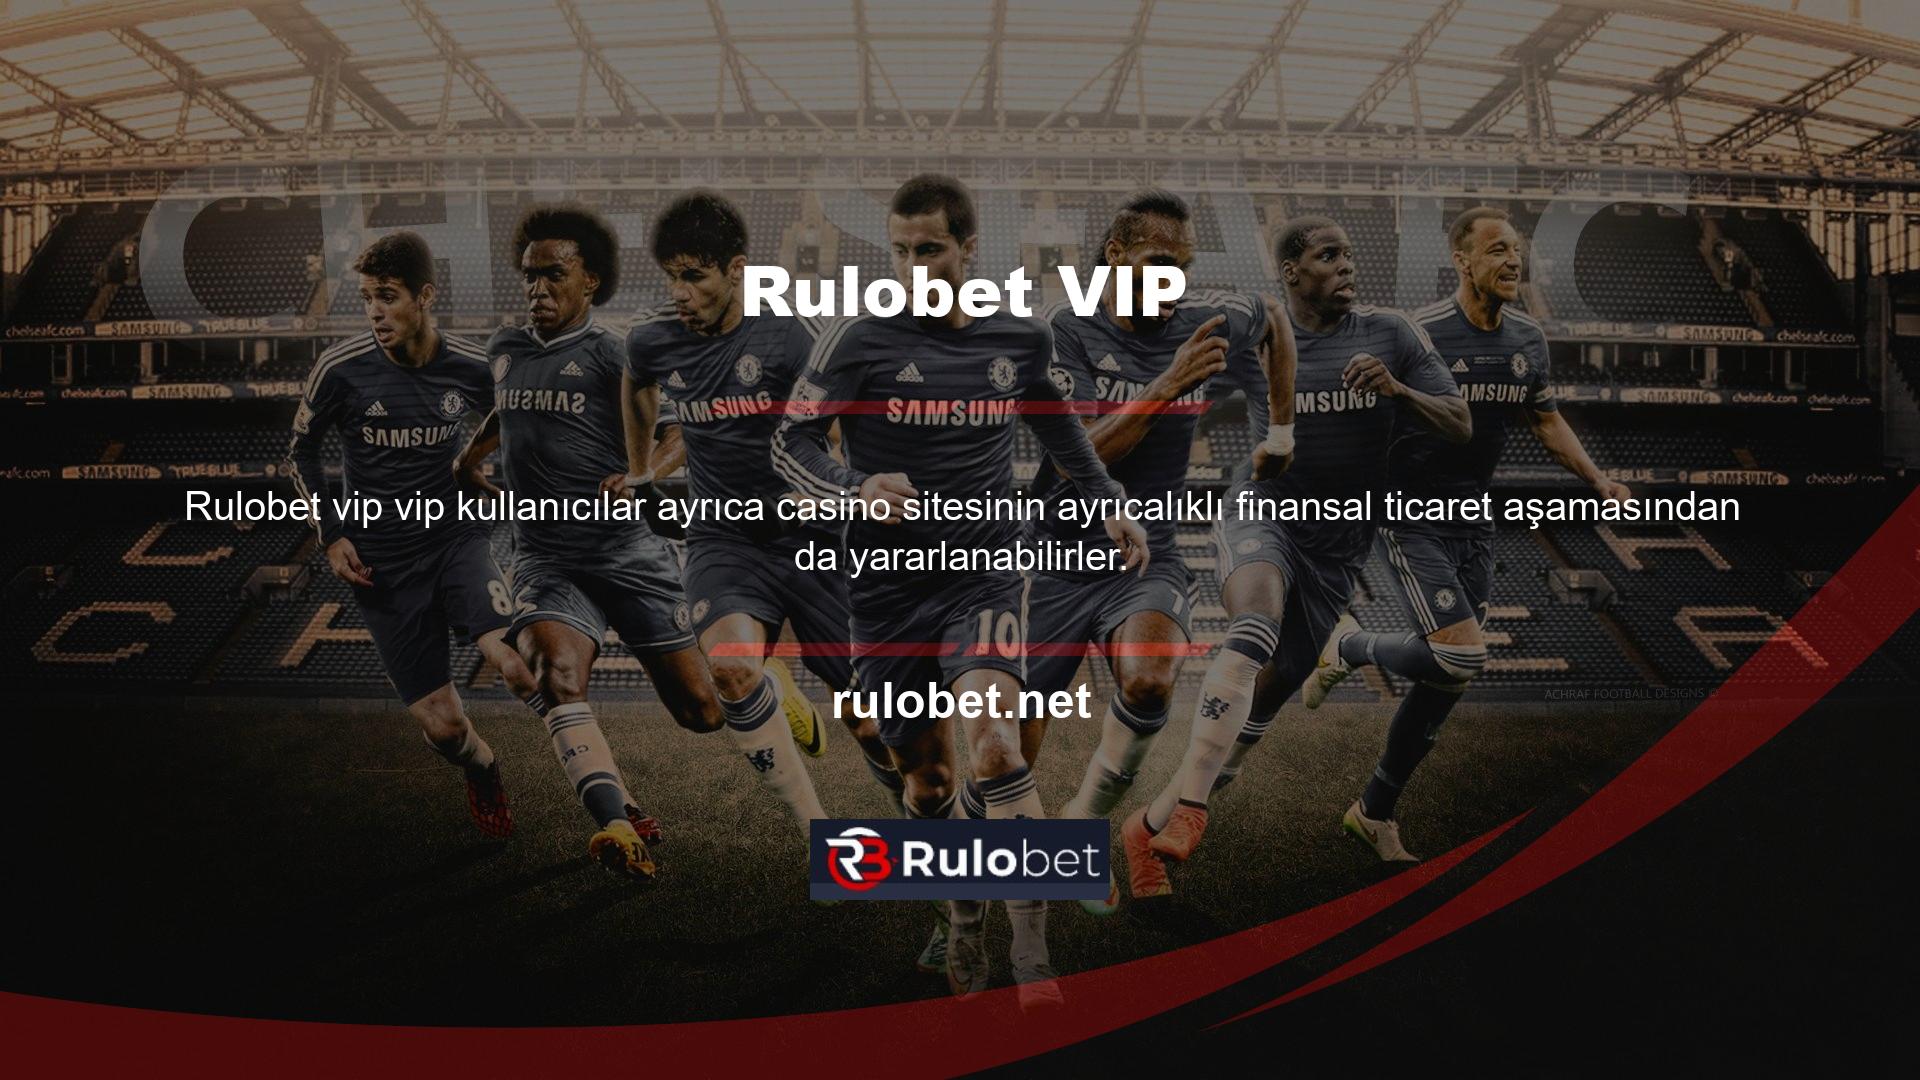 Rulobet oyun platformu, kullanıcıların yatırım ve para çekme aşamalarında minimum ve maksimum normal şart ve koşullara uygun işlem yapmalarını gerektirir